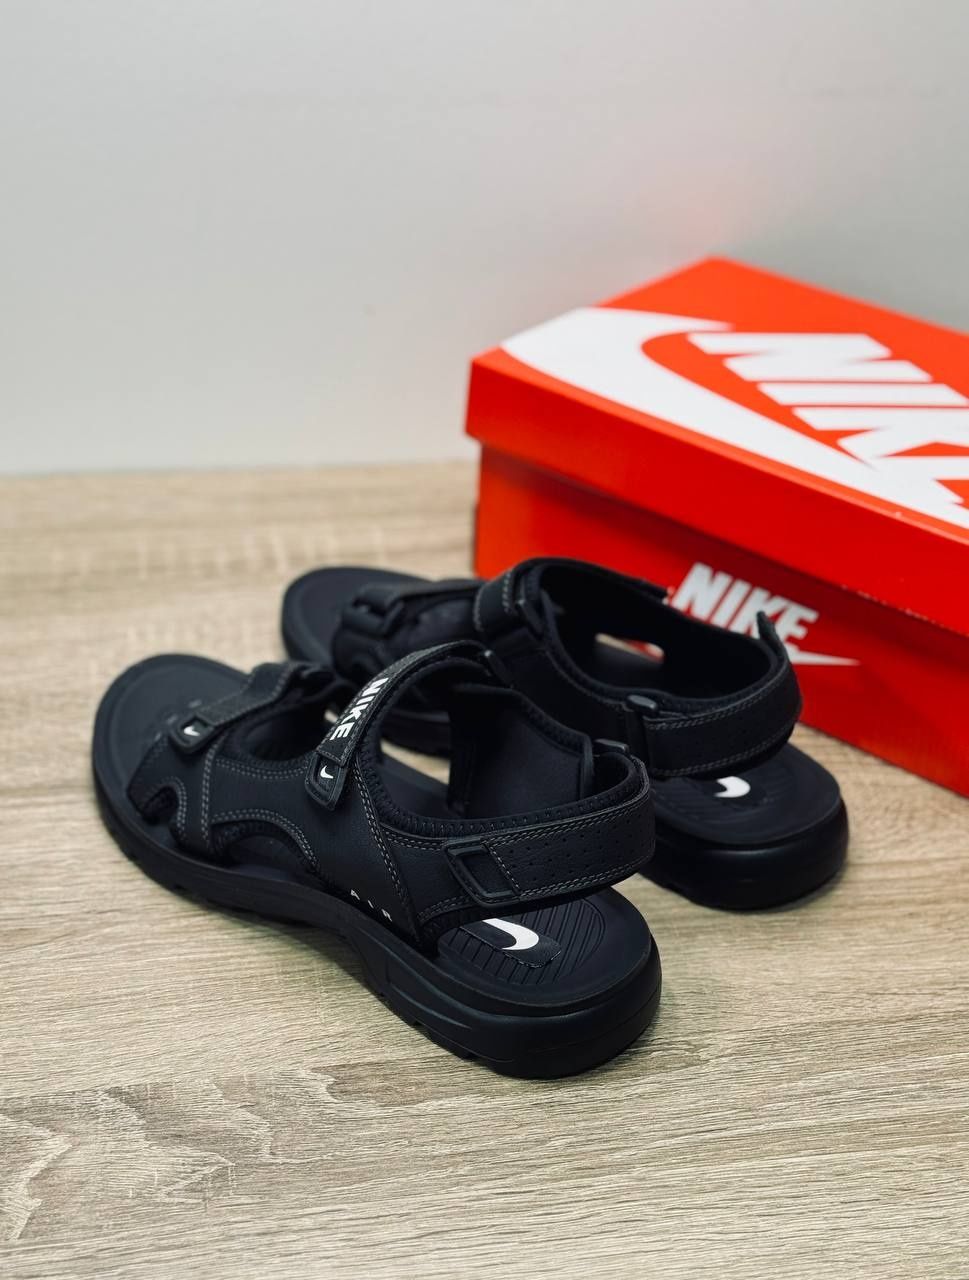 МУЖСКИЕ сандалии Nike сандалии чёрного цвета Найк 40-45